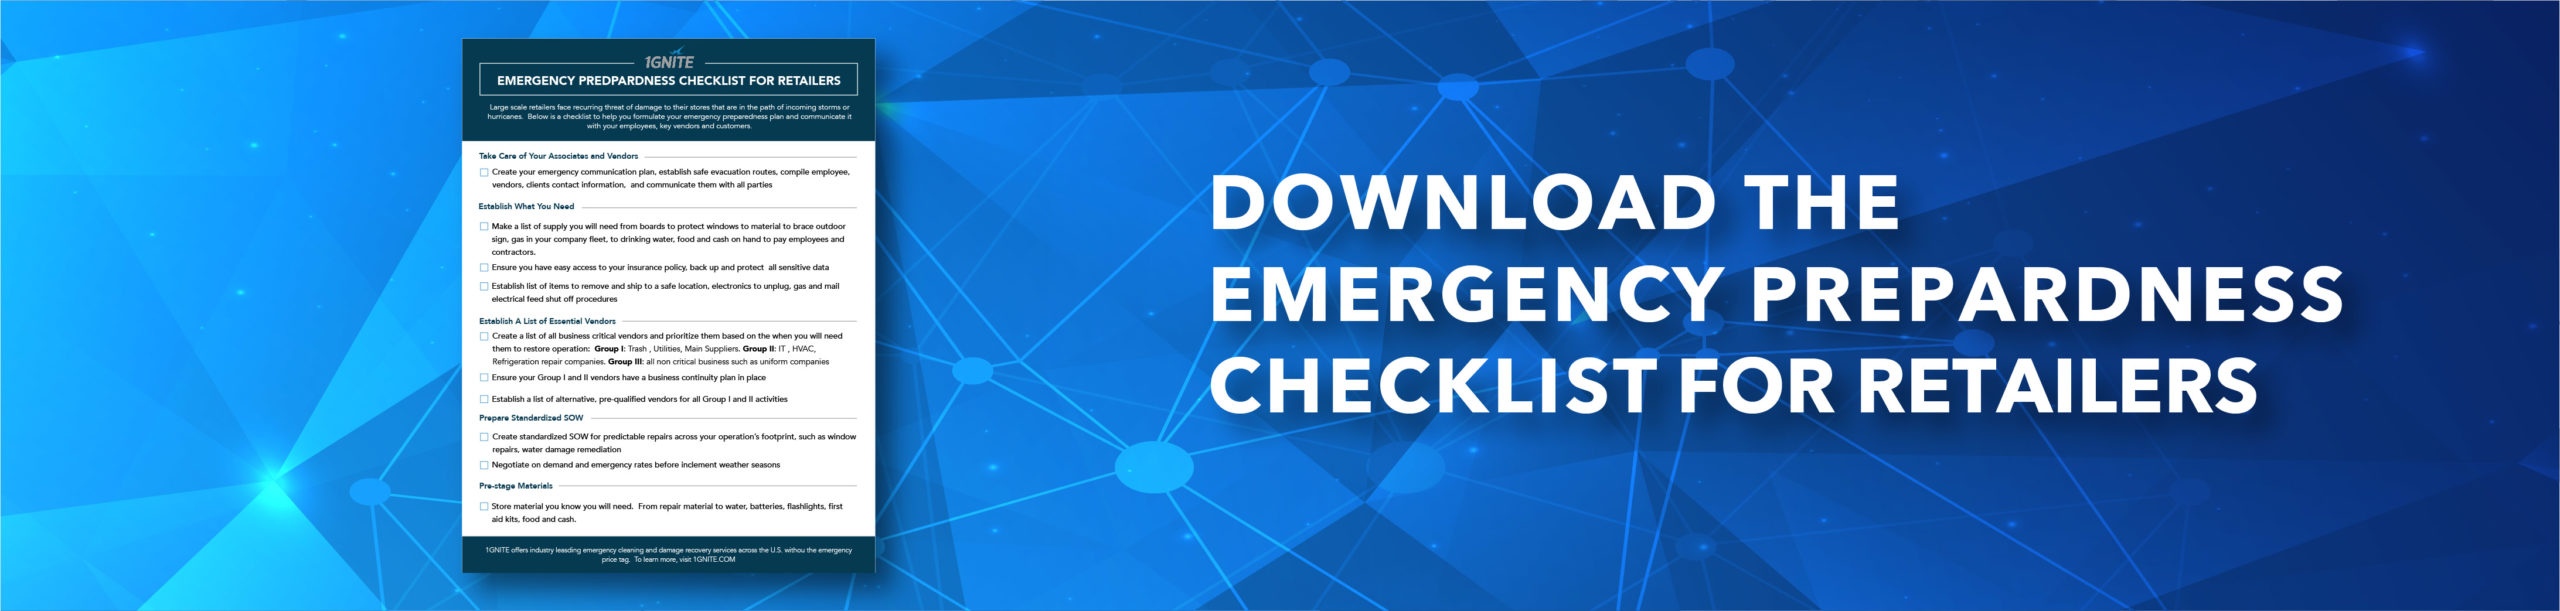 Emergency Preparedness Checklist for retailers